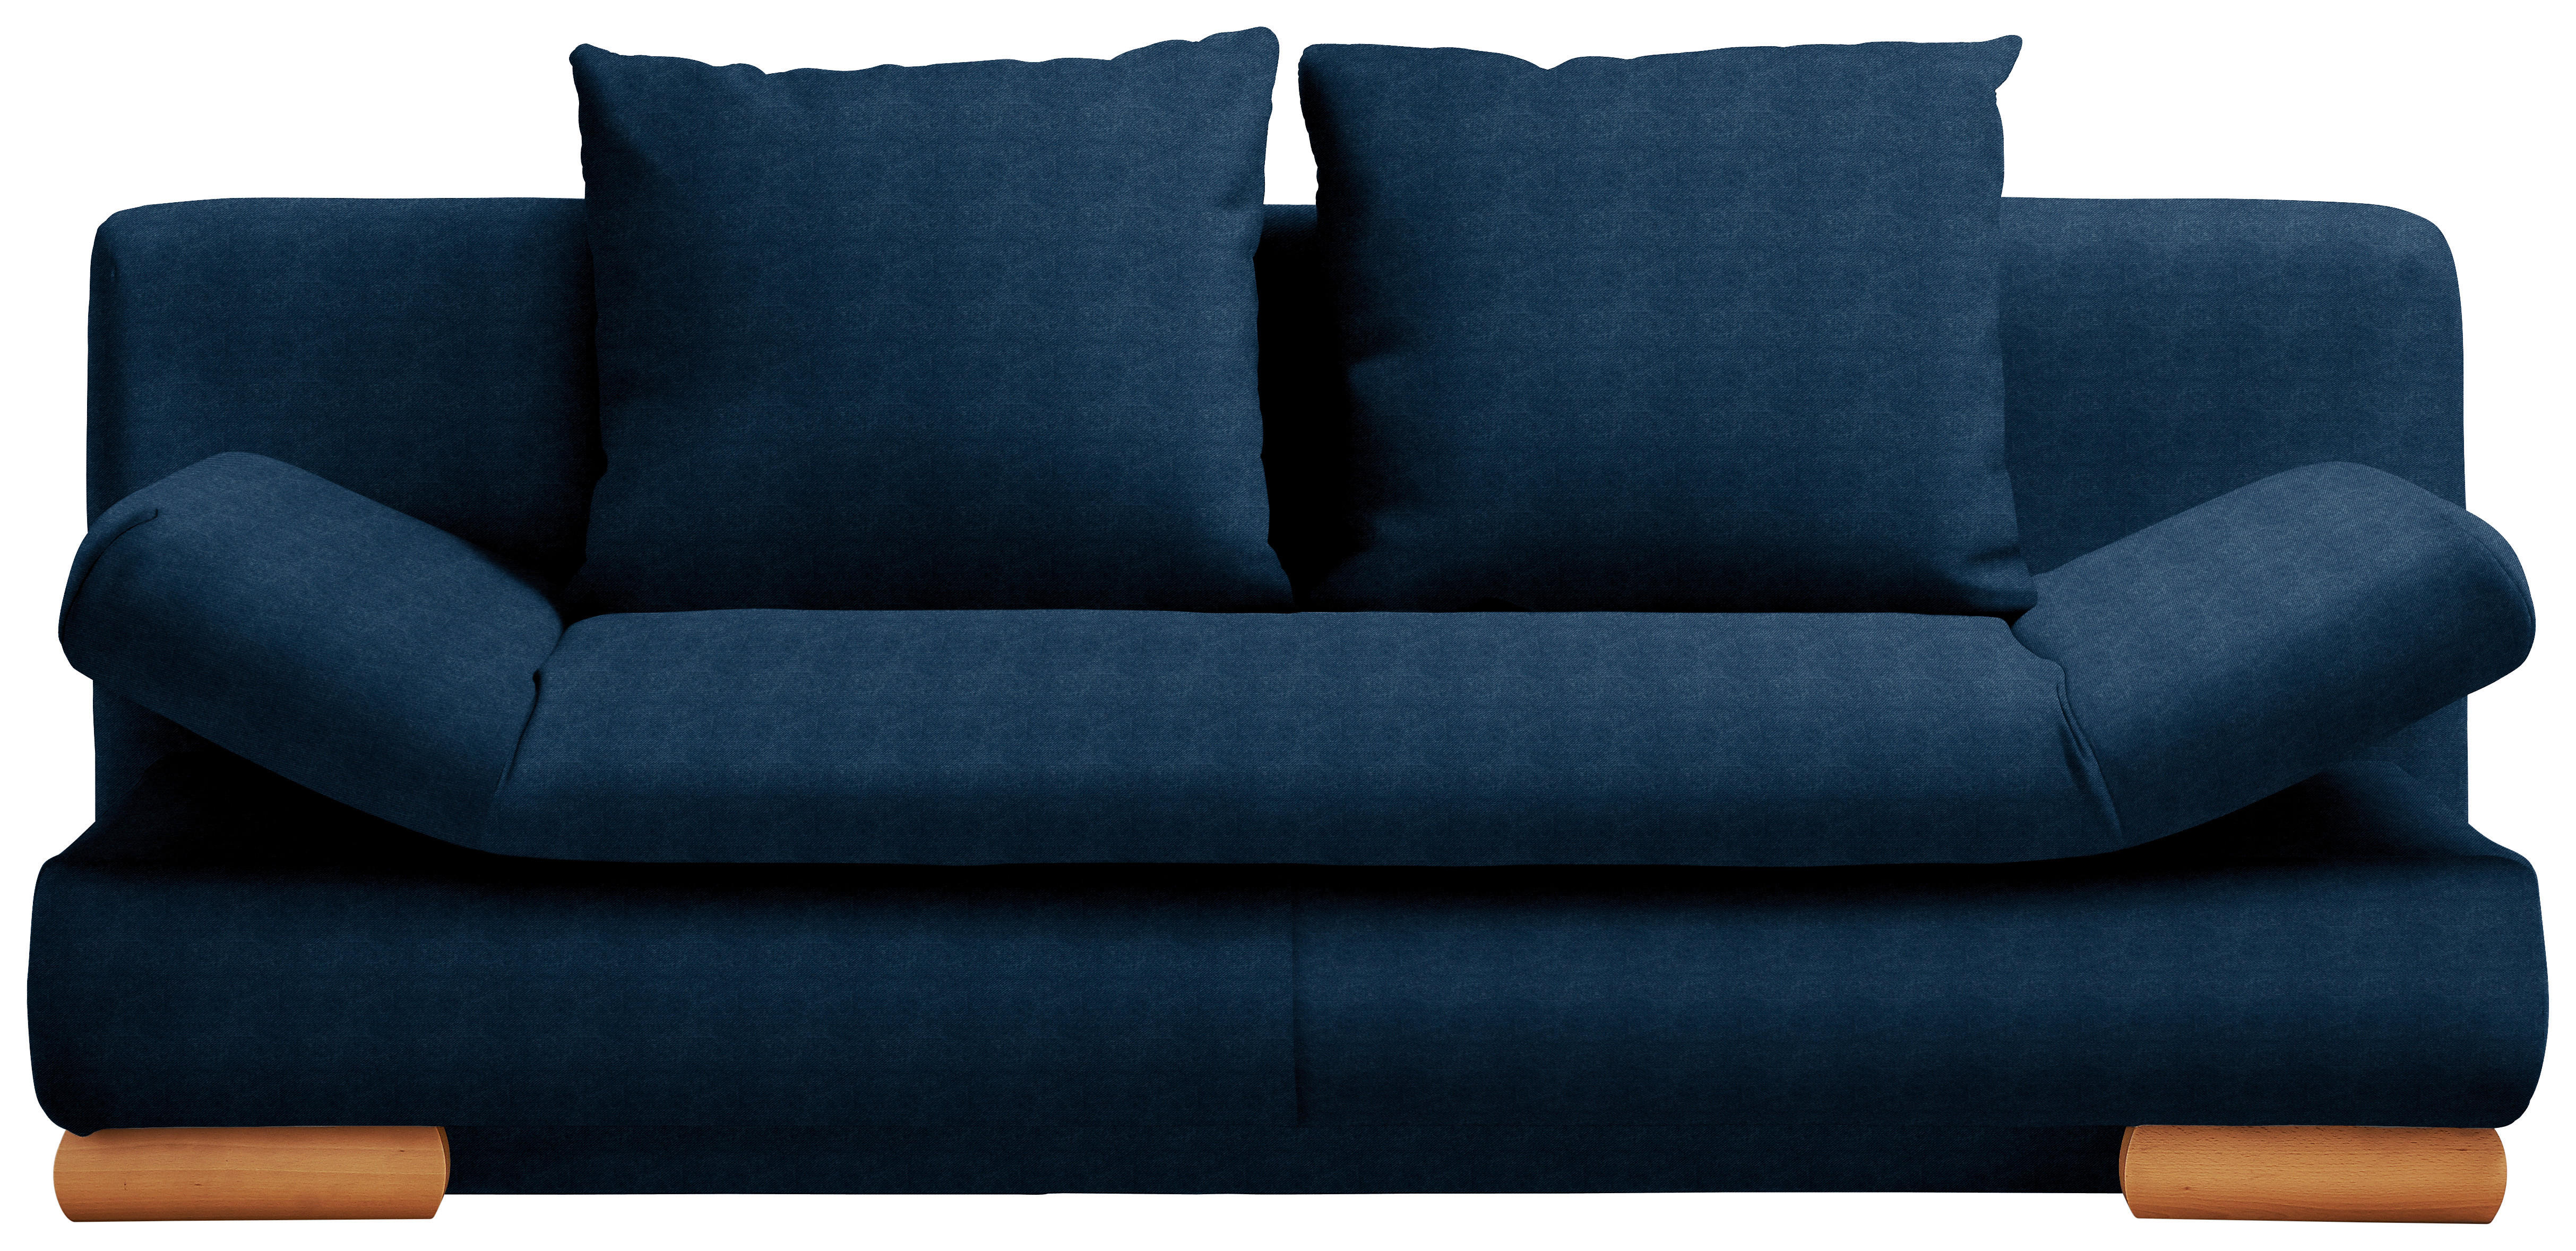 SCHLAFSOFA Blau  - Blau, Design, Holz/Textil (200/87/93cm) - Venda